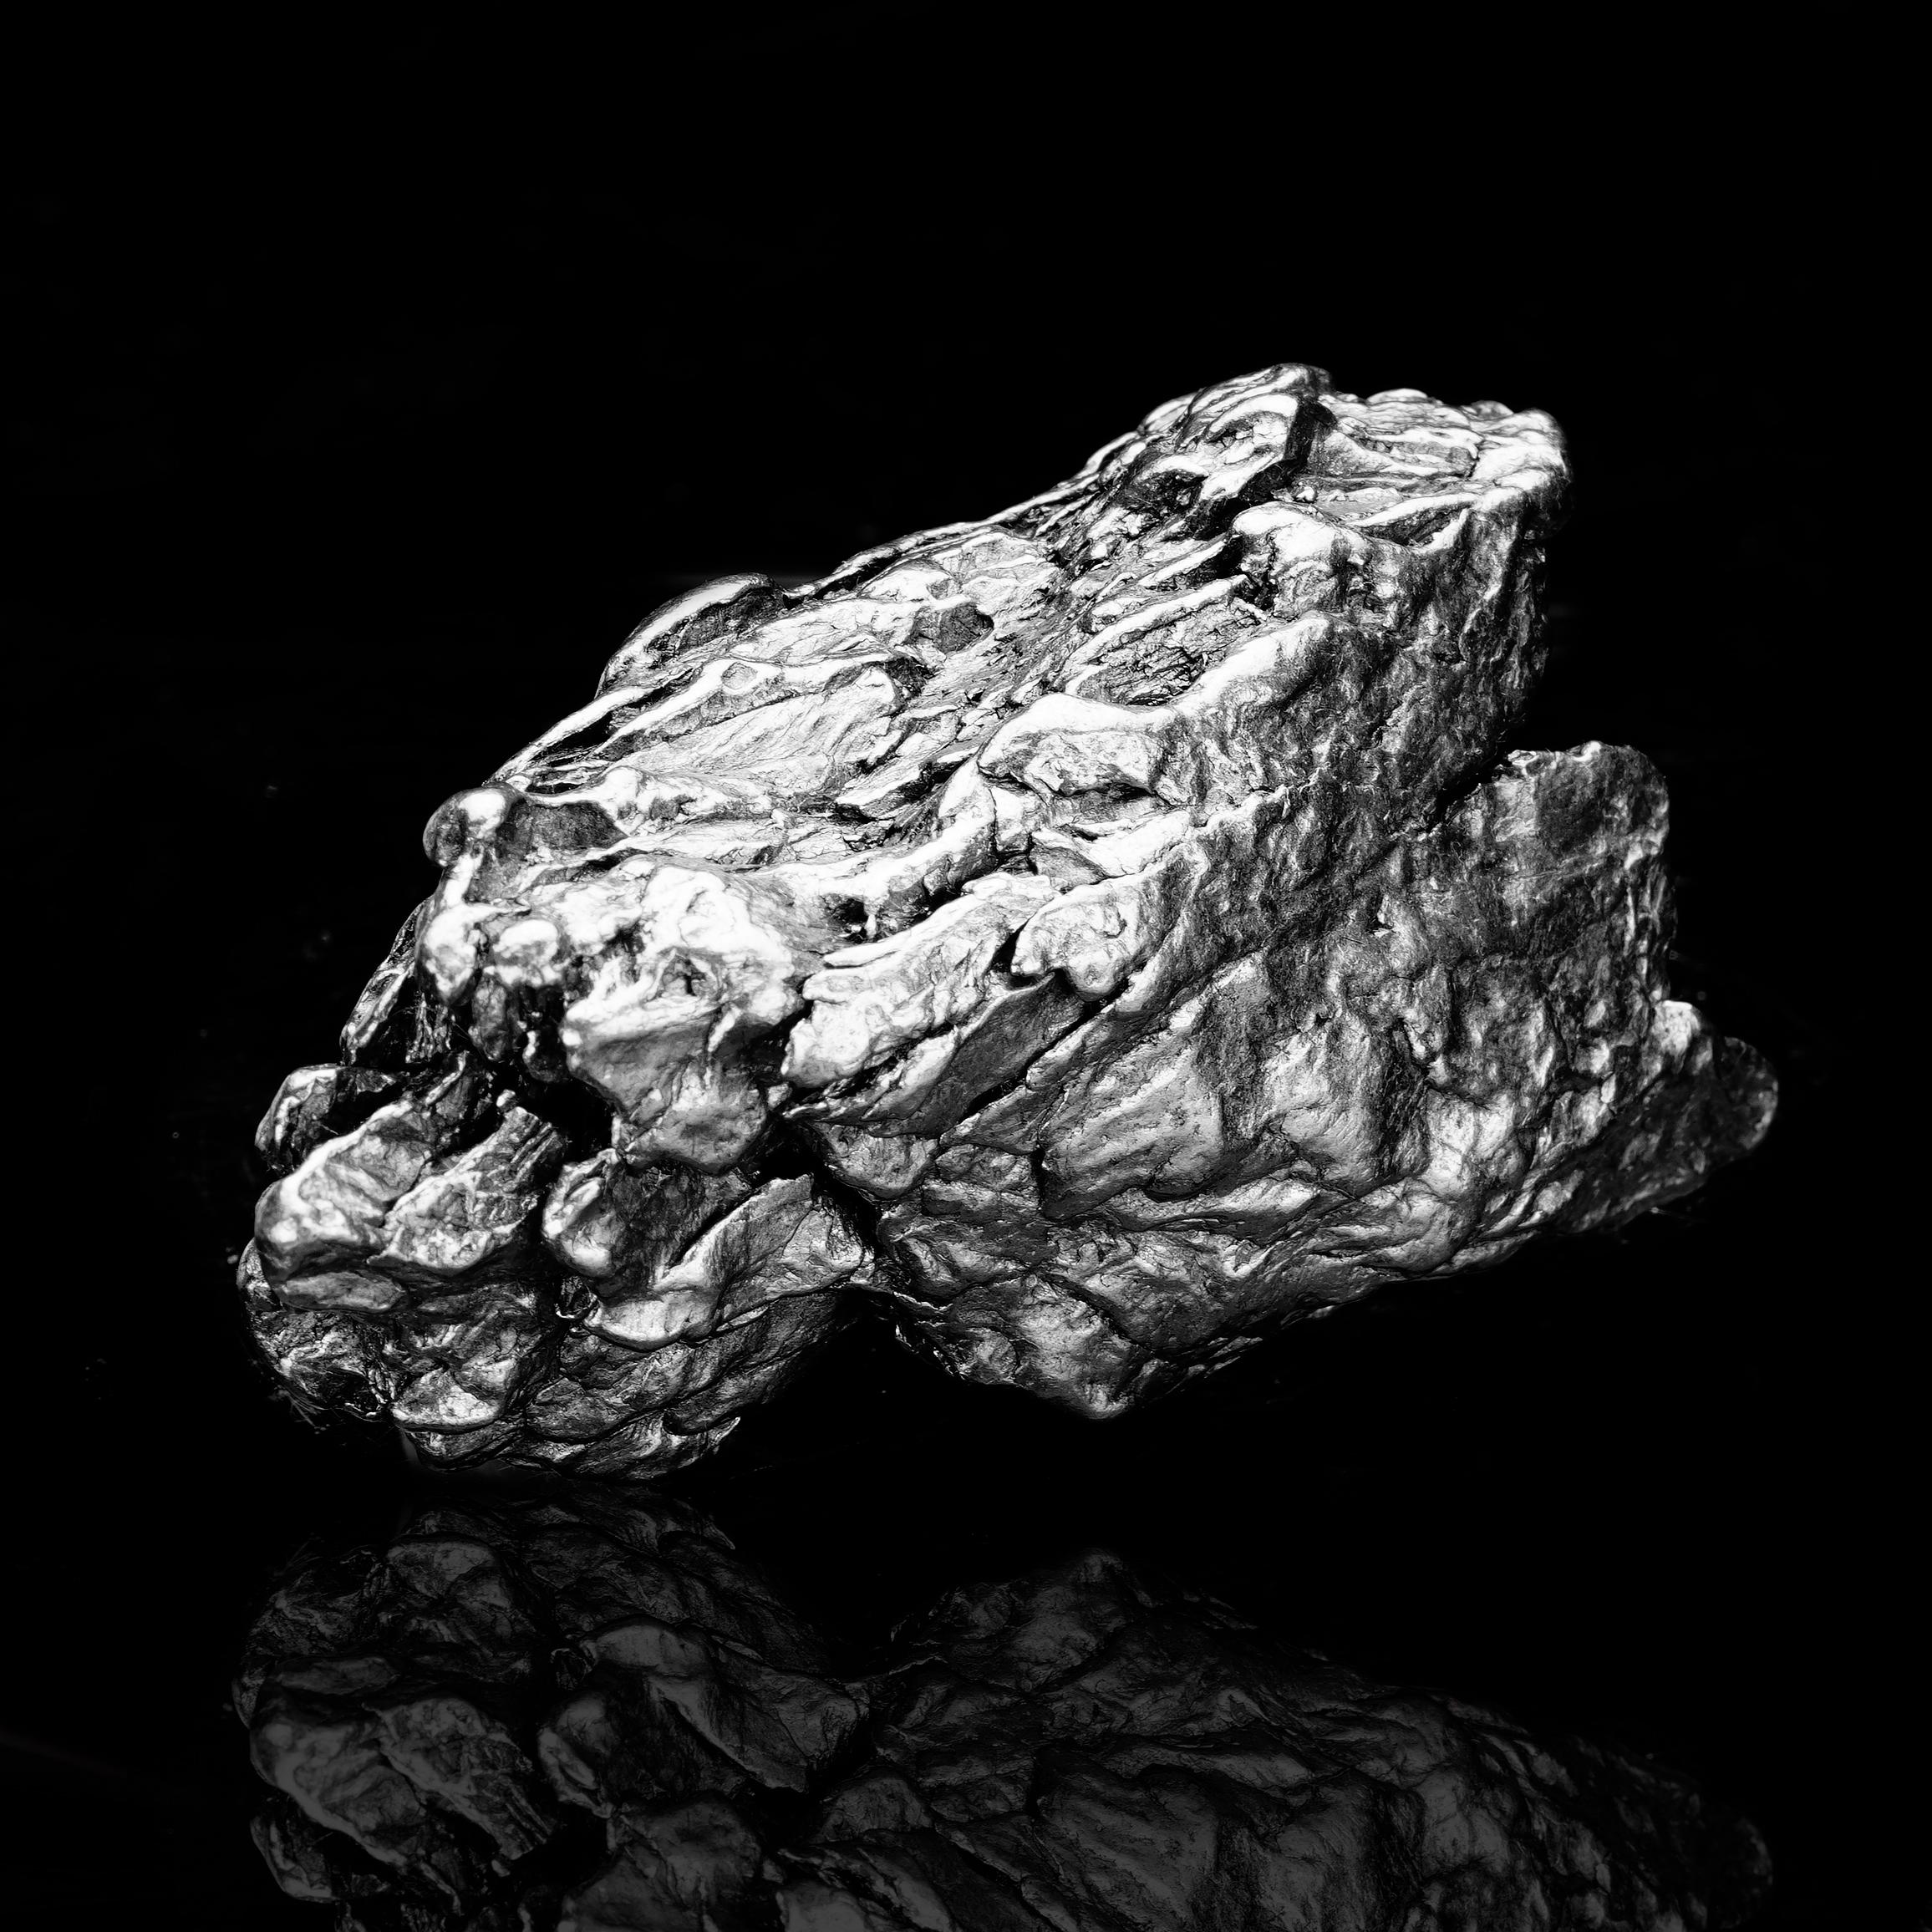 Les météorites de fer de Campo del Cielo ont été découvertes en 1576 à environ 500 miles au nord-ouest de Buenos Aires, en Argentine. Des tests ont prouvé que les 